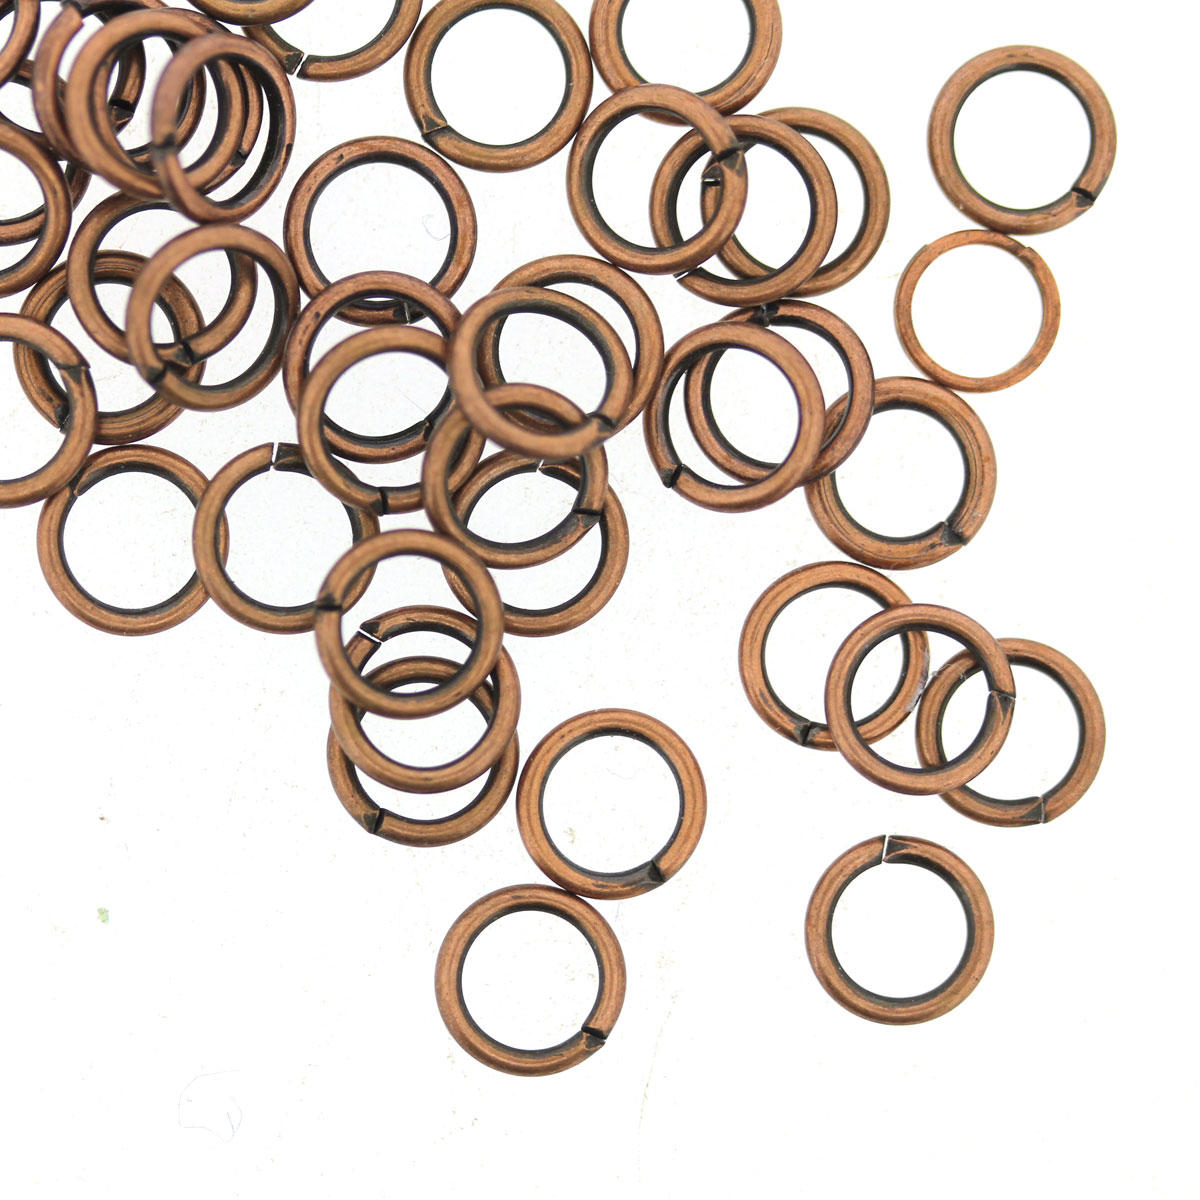 Antique Copper Medium Jump-ring Finding